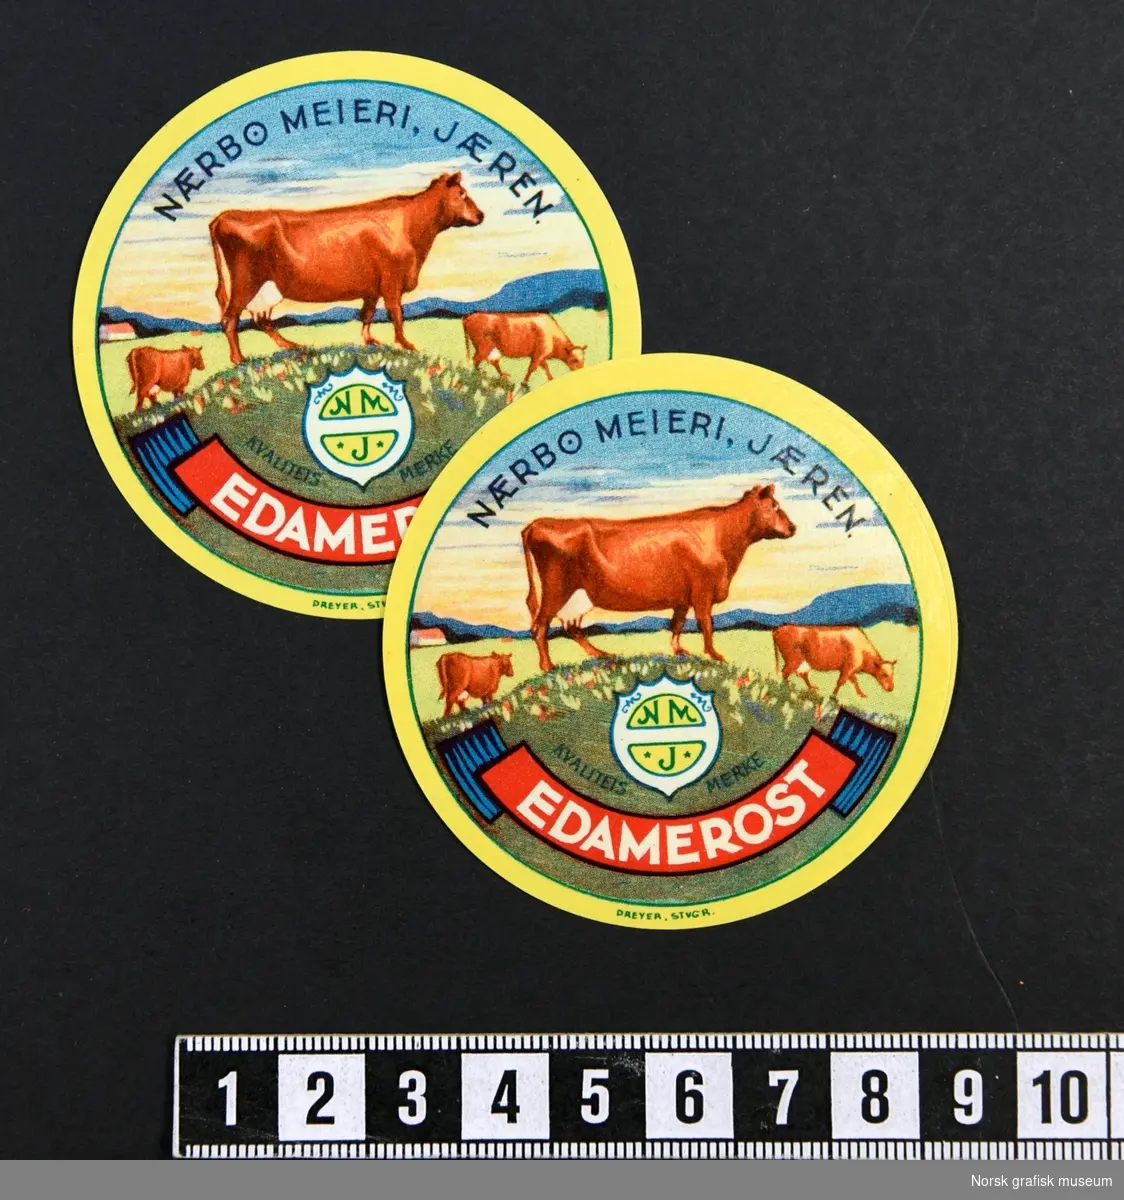 Runde etiketter med gul ramme rundt et motiv av kyr på en eng. 

"Edamerost"